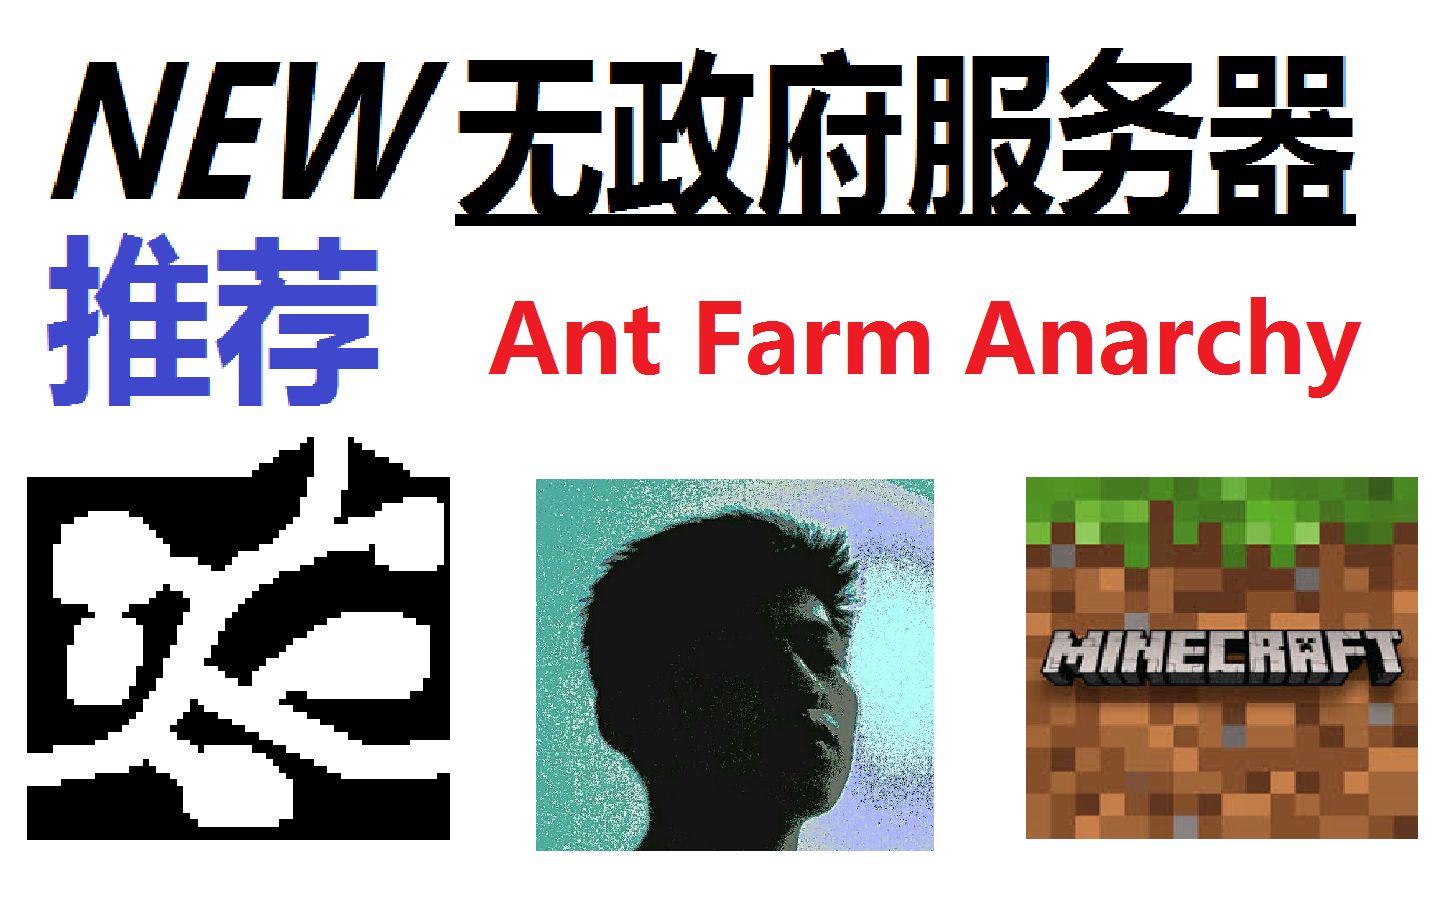 我的世界 一个新的无政府服务器 Ant Farm Anarchy 喜欢2b2t却排不上 试试这个 生存服务器 腐竹很友好 特殊地图 无 管理 自由游玩 哔哩哔哩